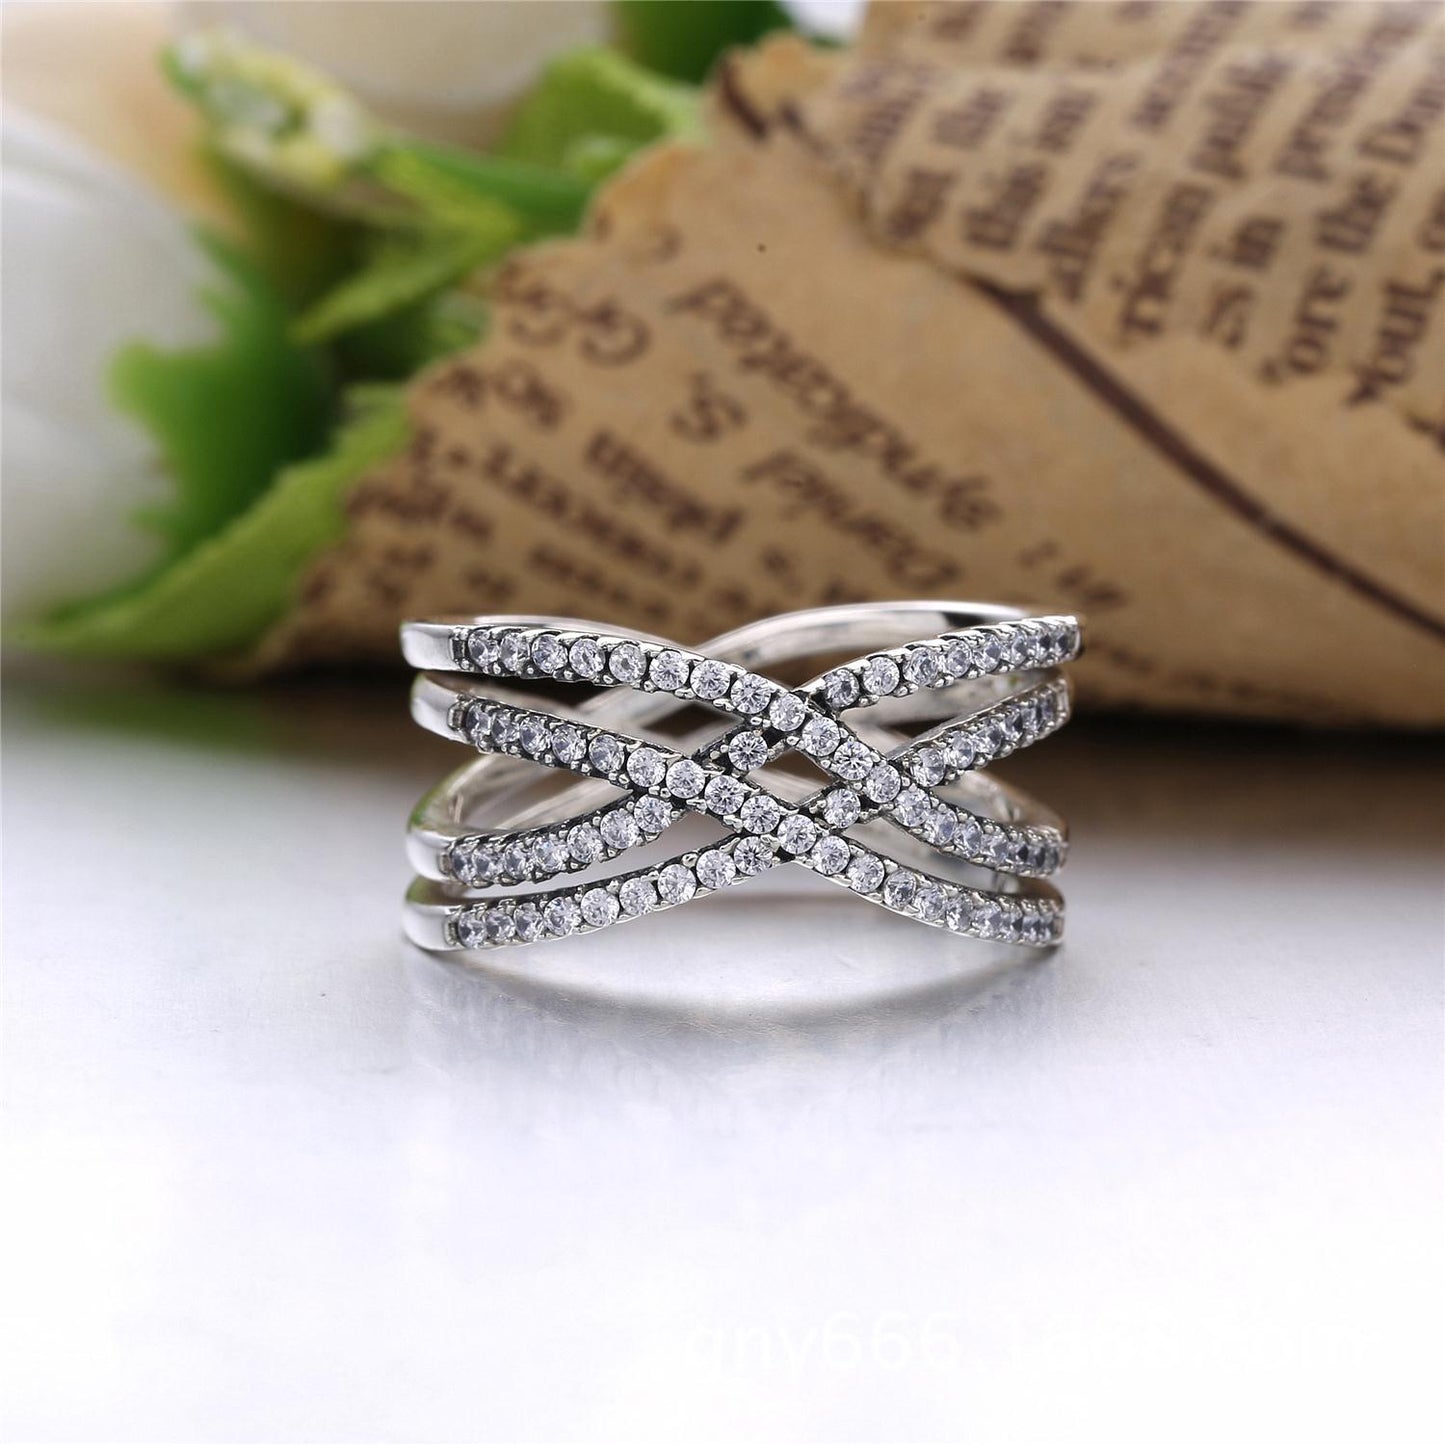 Cross Sterling Silver Wedding Ring